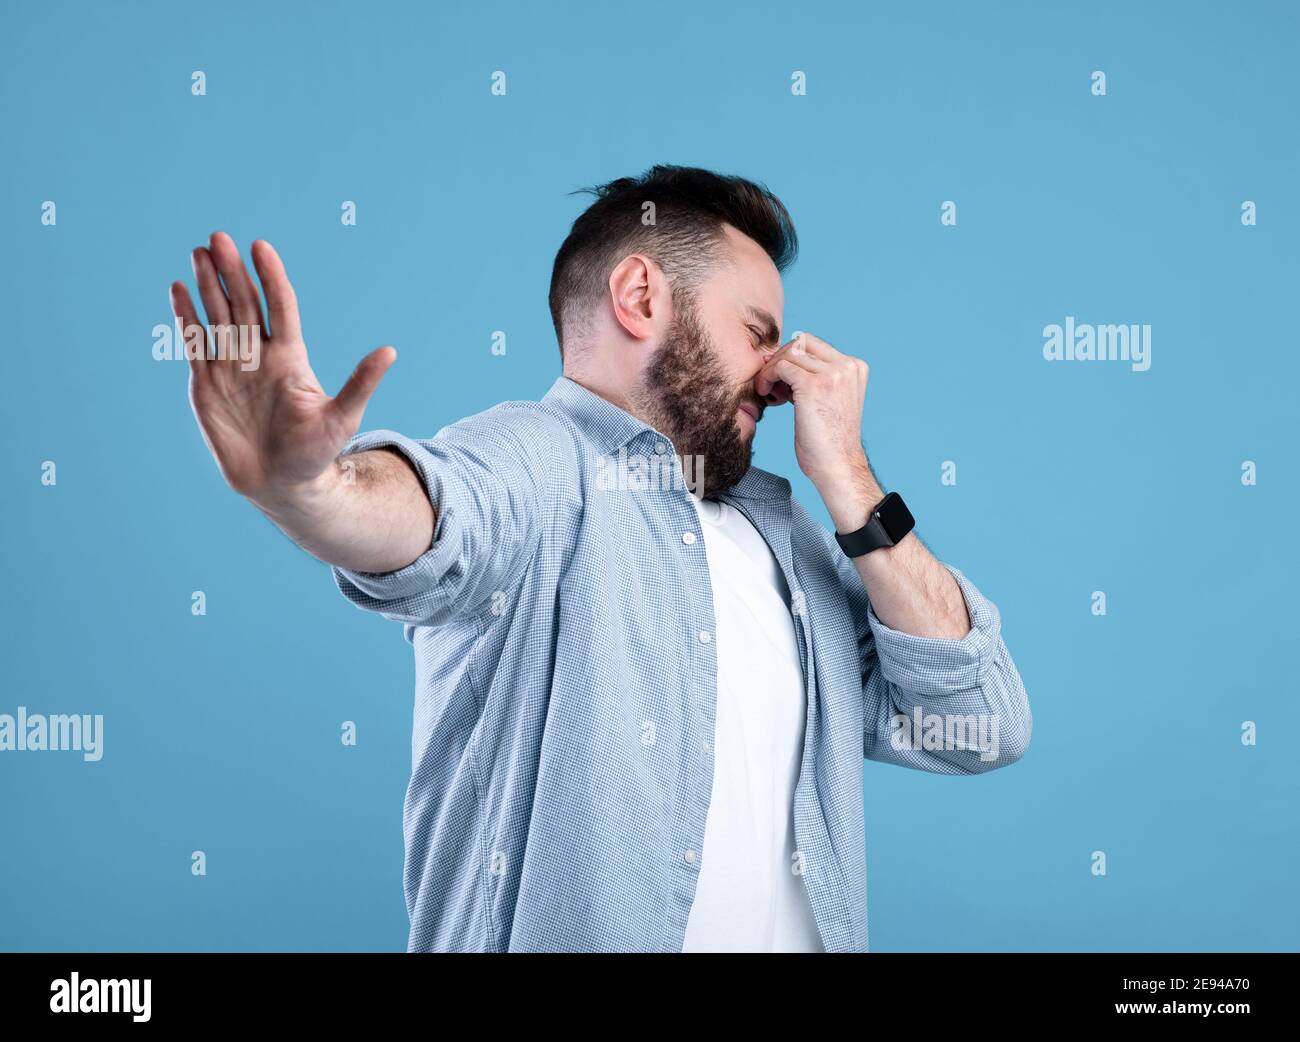 Cattivo odore. Giovane ragazzo bearded che chiude il naso e mostra un gesto DI STOP, esprimendo disgusto su sfondo blu dello studio Foto Stock